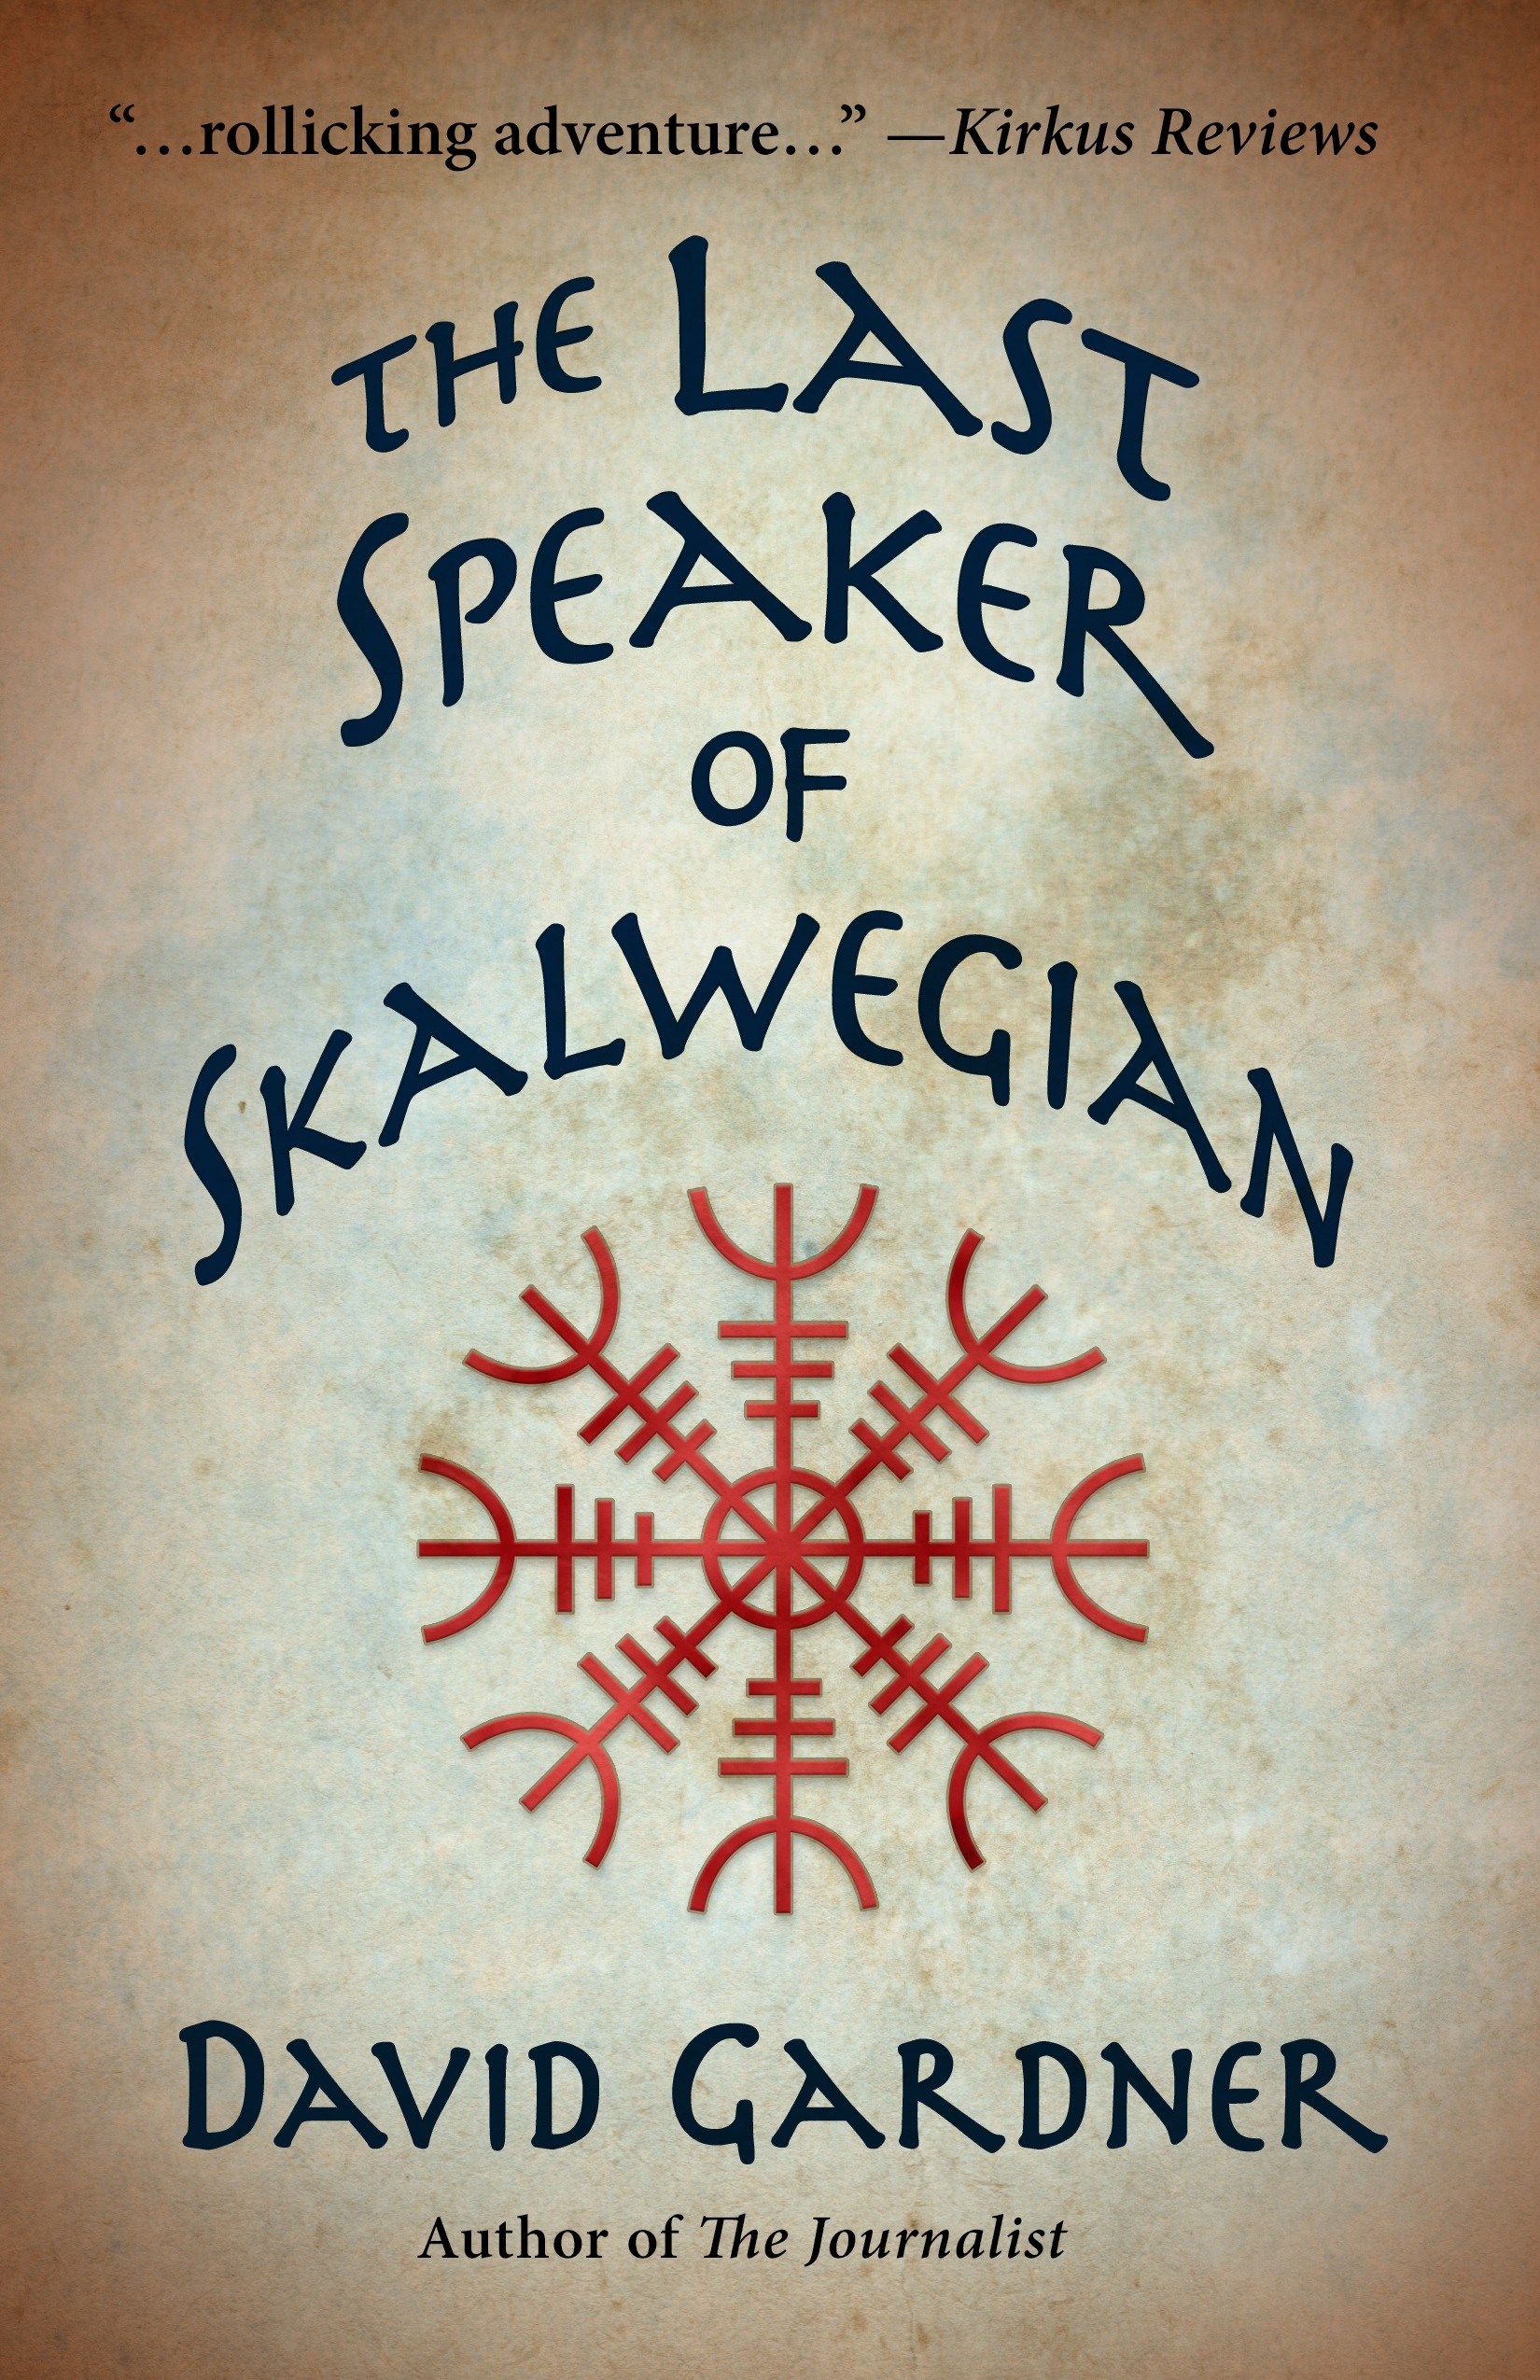 The Last Speaker of Skalwegian by David Gardner